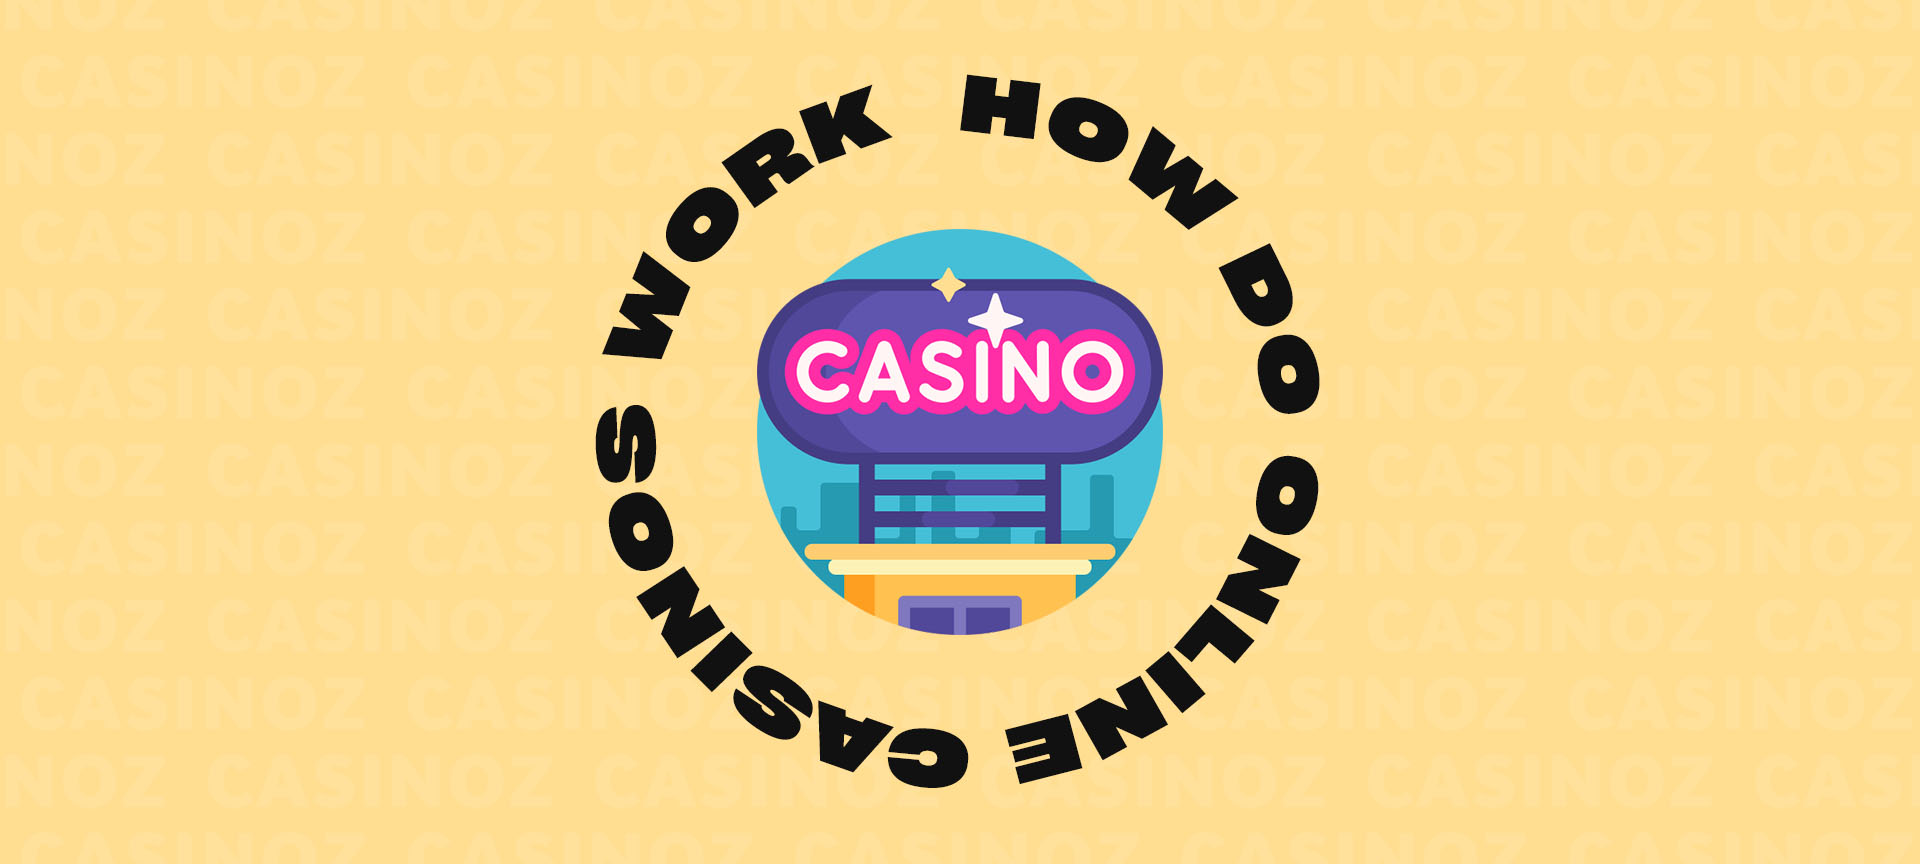 Ce puteți face despre casino online noi  chiar acum